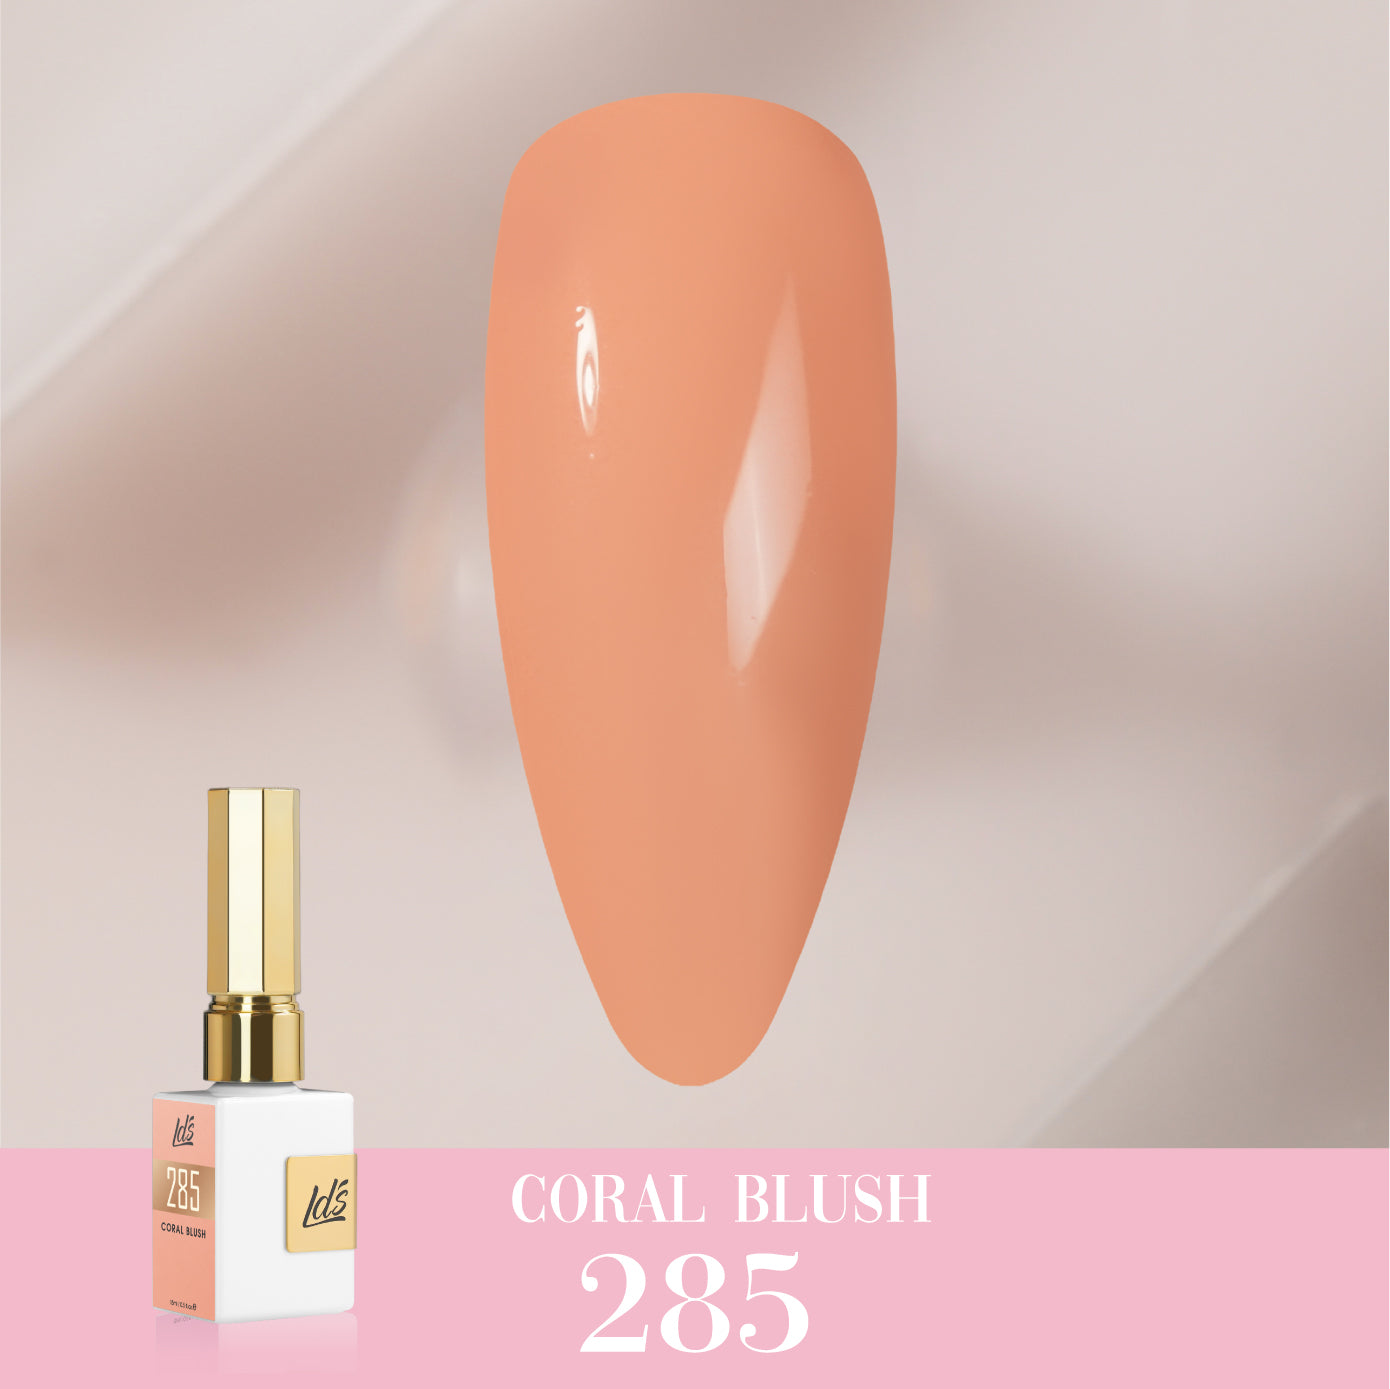 LDS Color Craze Collection - 285 Coral Blush - Gel Polish 0.5oz